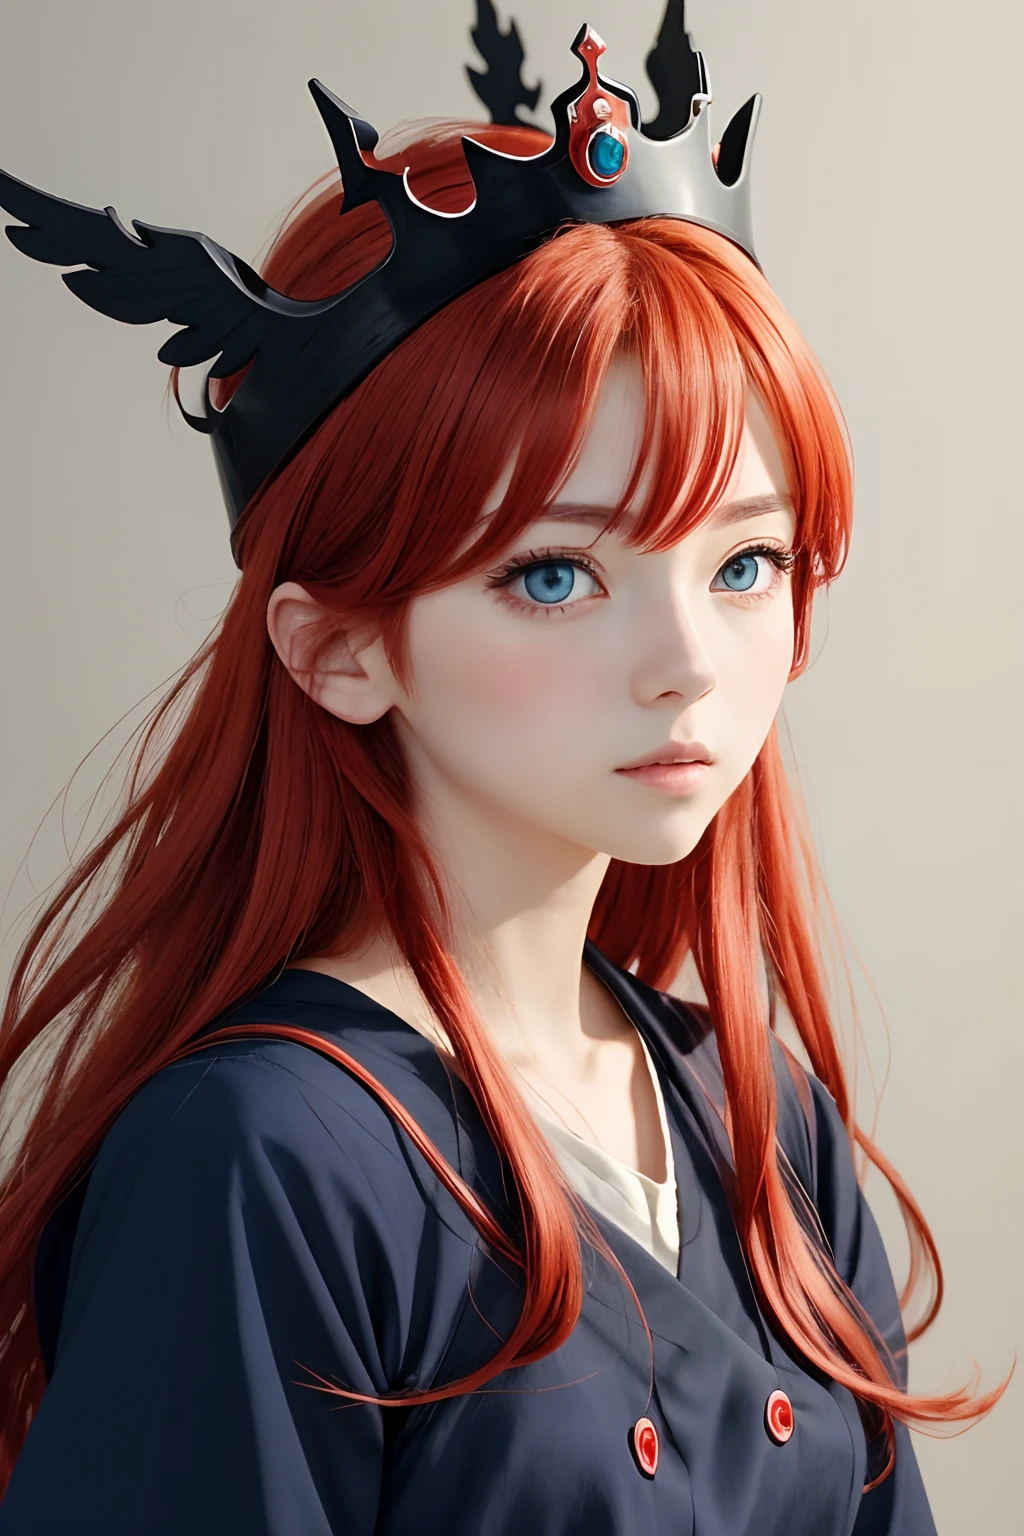 estilo inferior, estilo ghibli,Chica anime con corona, cabello rojo y ojos azules con ropa negra., mirando al espectador